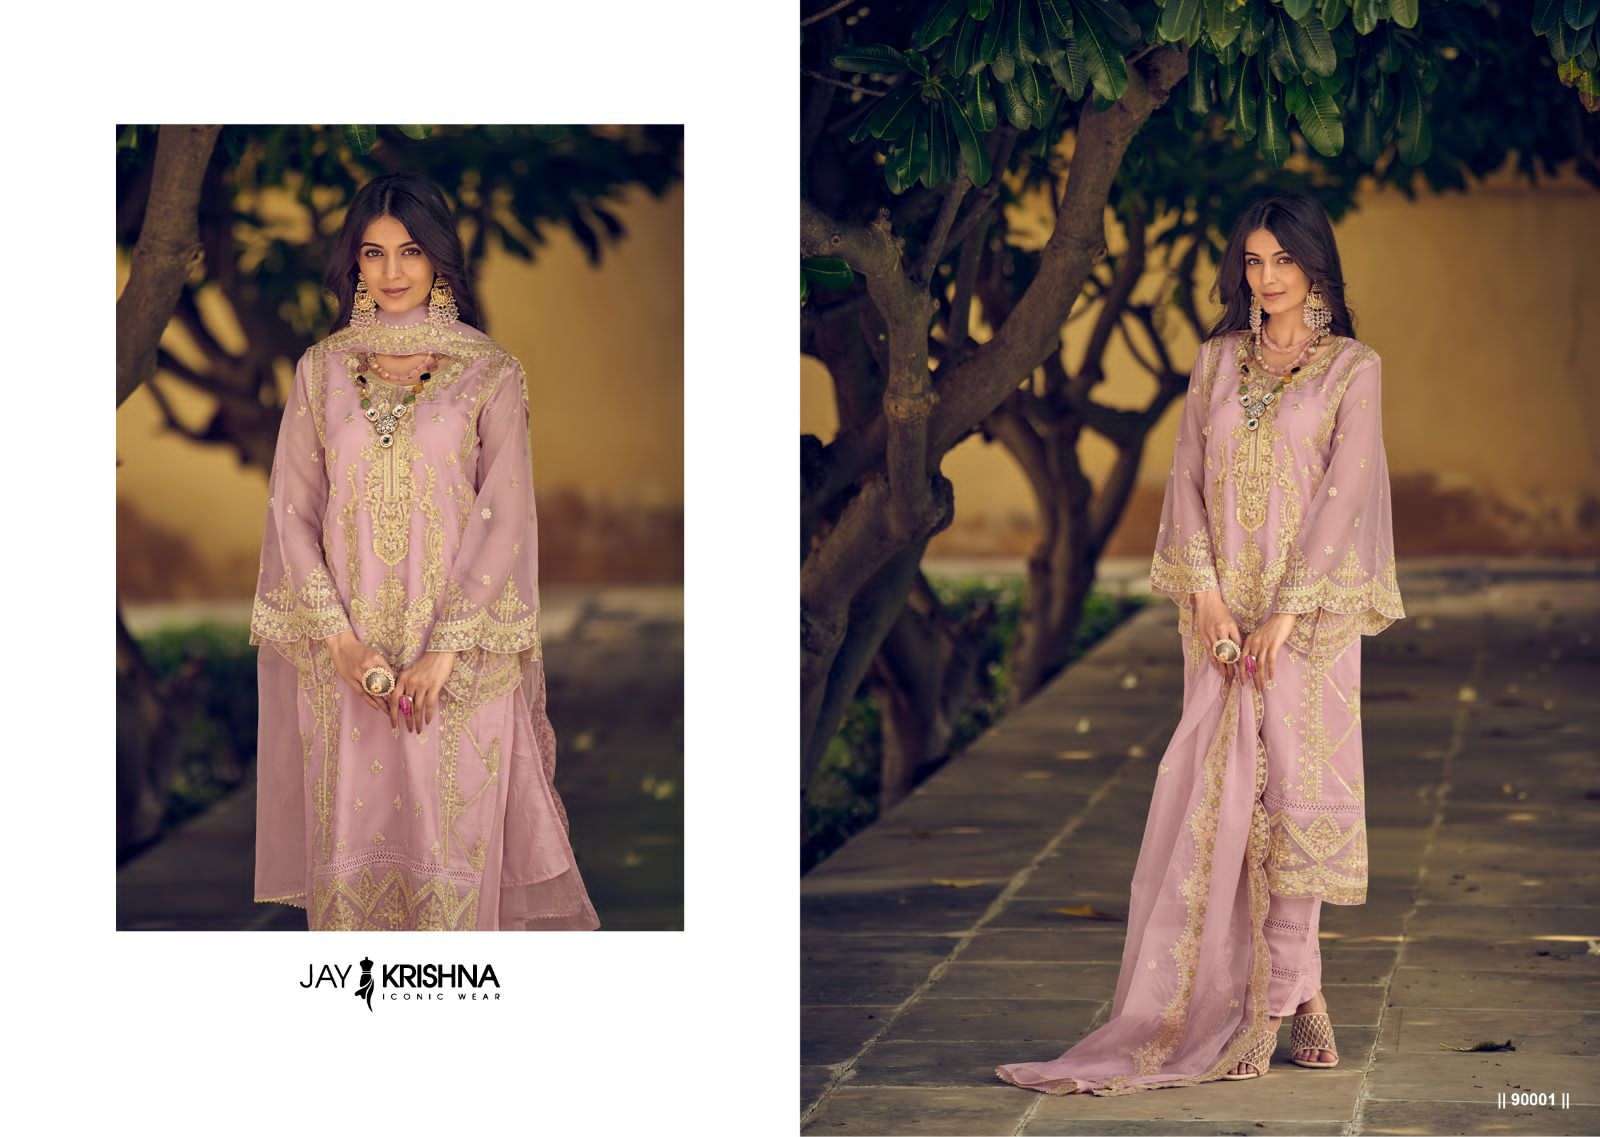 your choice messi vol-9 90001-90004 series readymade designer salwar suits catalogue wholesaler surat